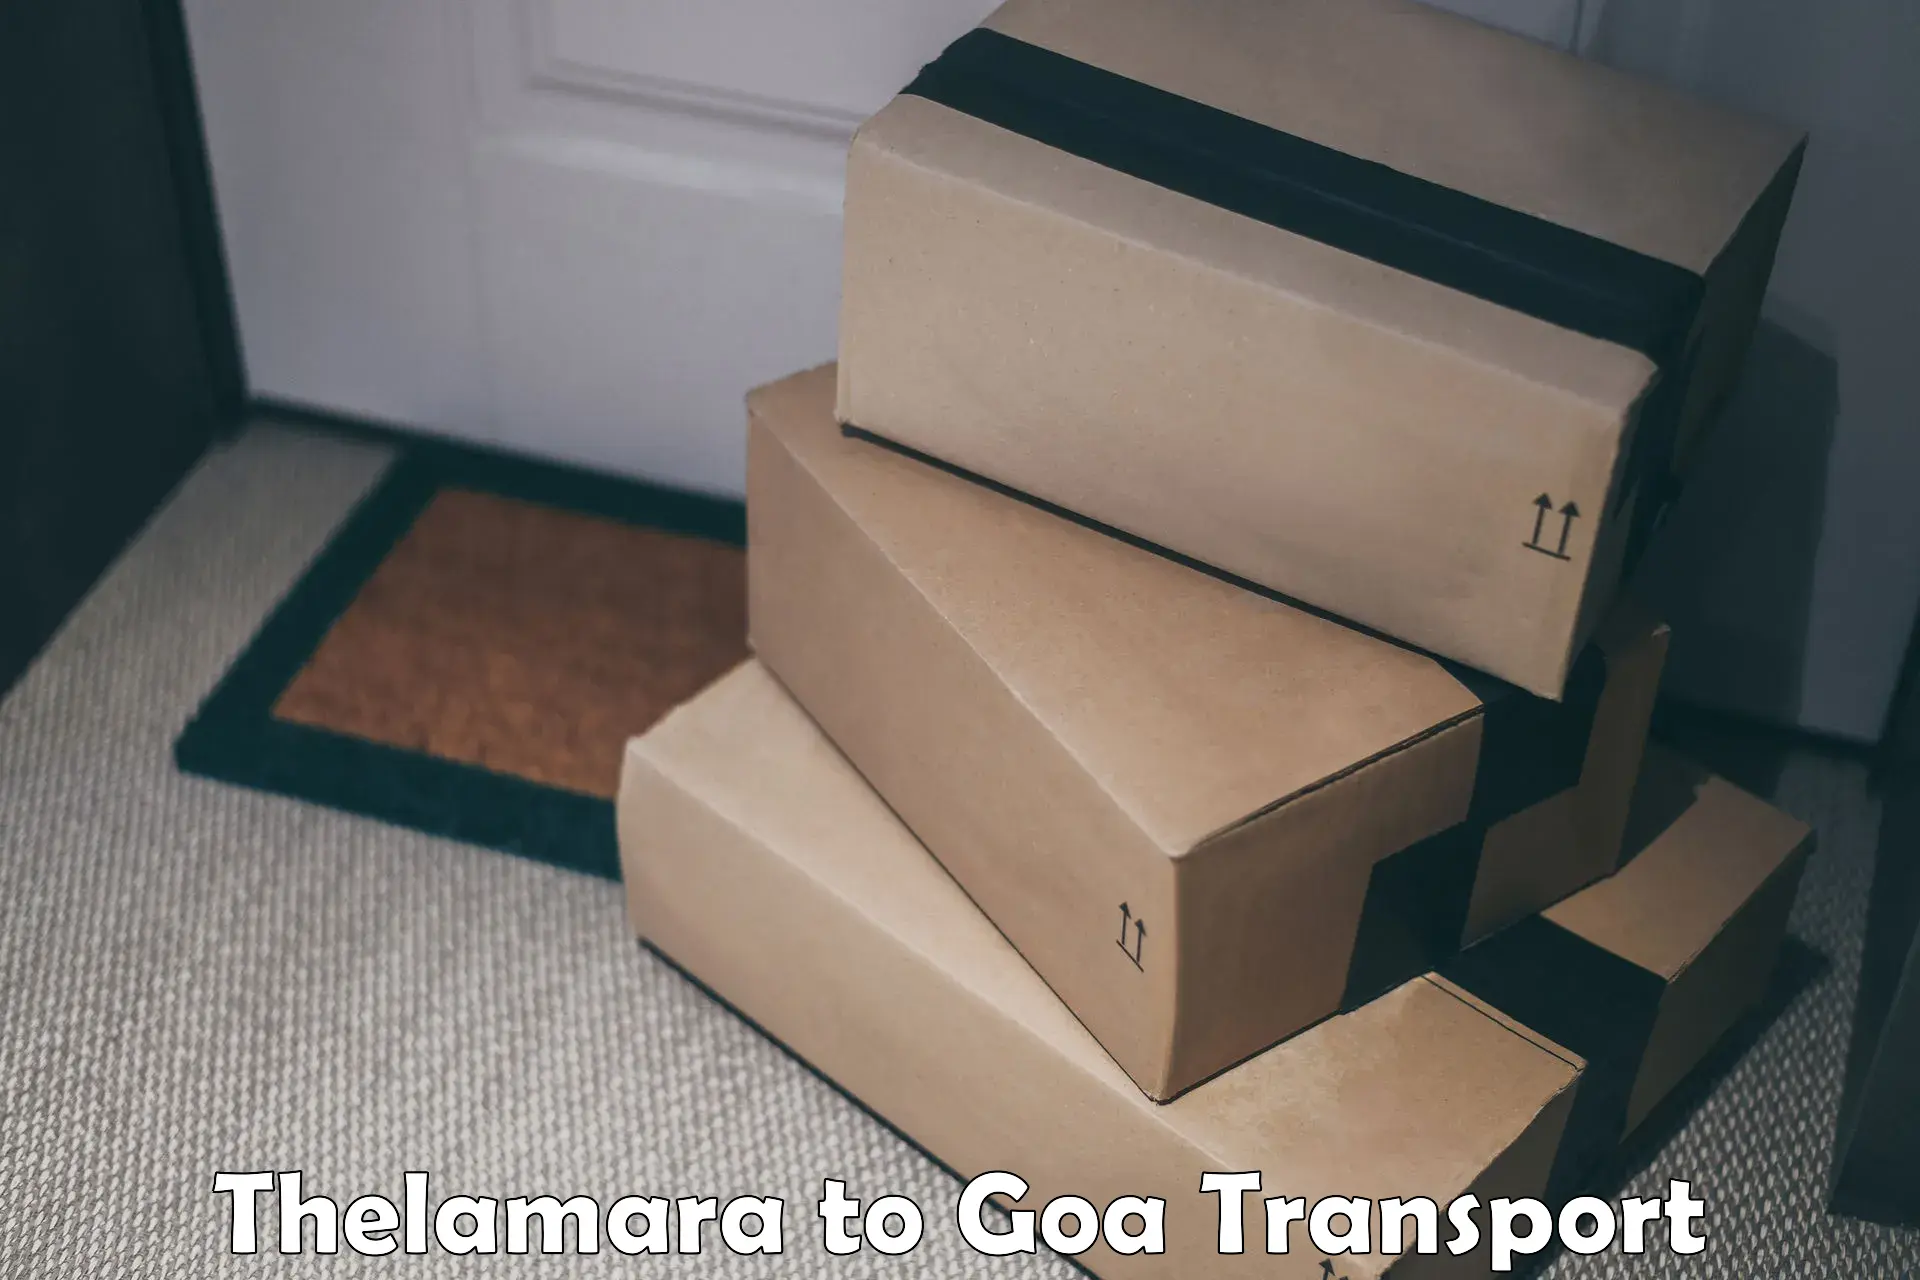 Daily parcel service transport Thelamara to Mormugao Port